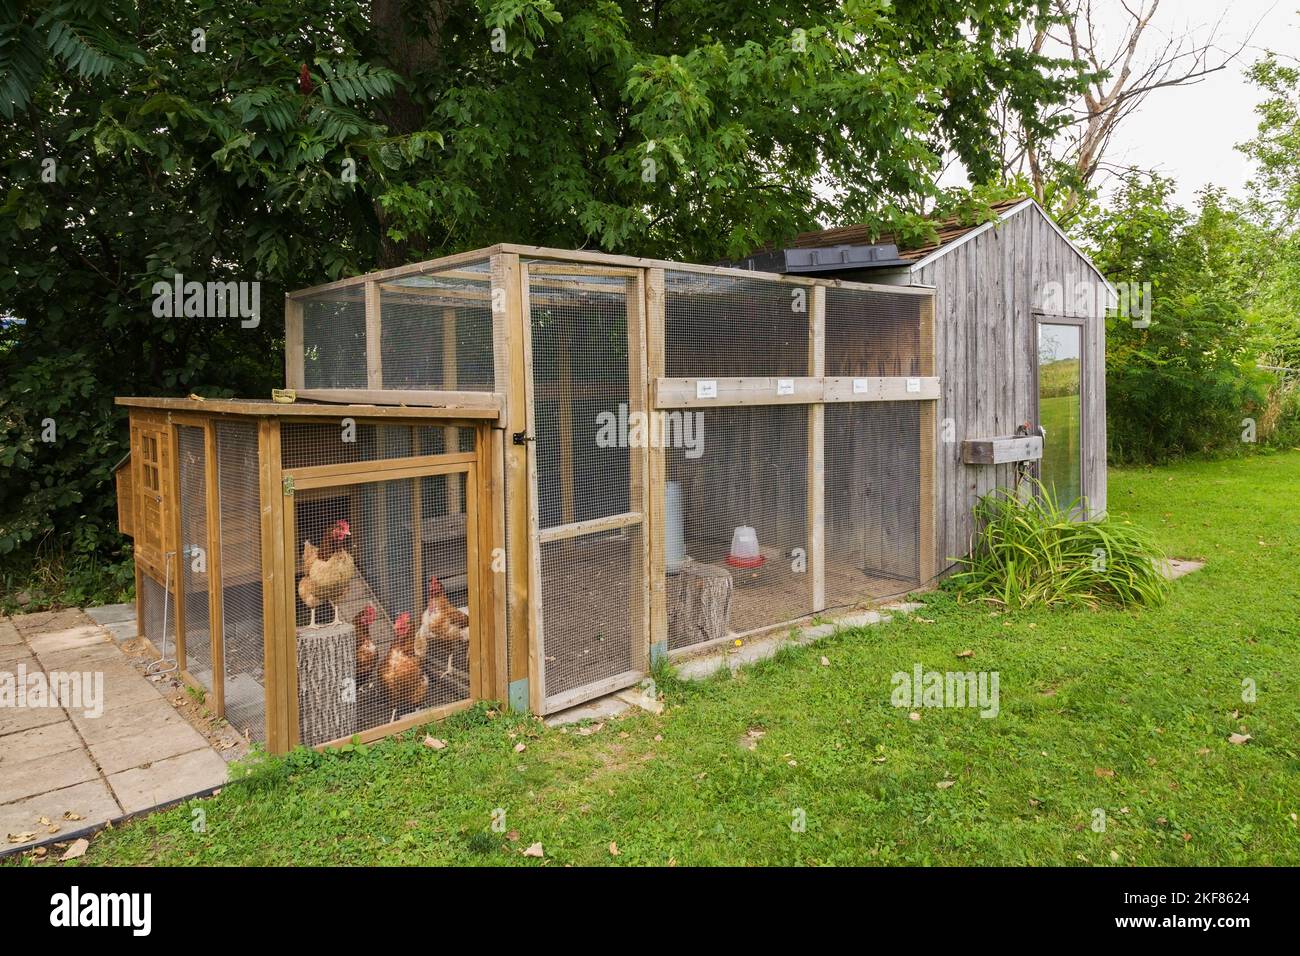 Gallinero con gallinas marrones en el patio residencial en verano. Foto de stock